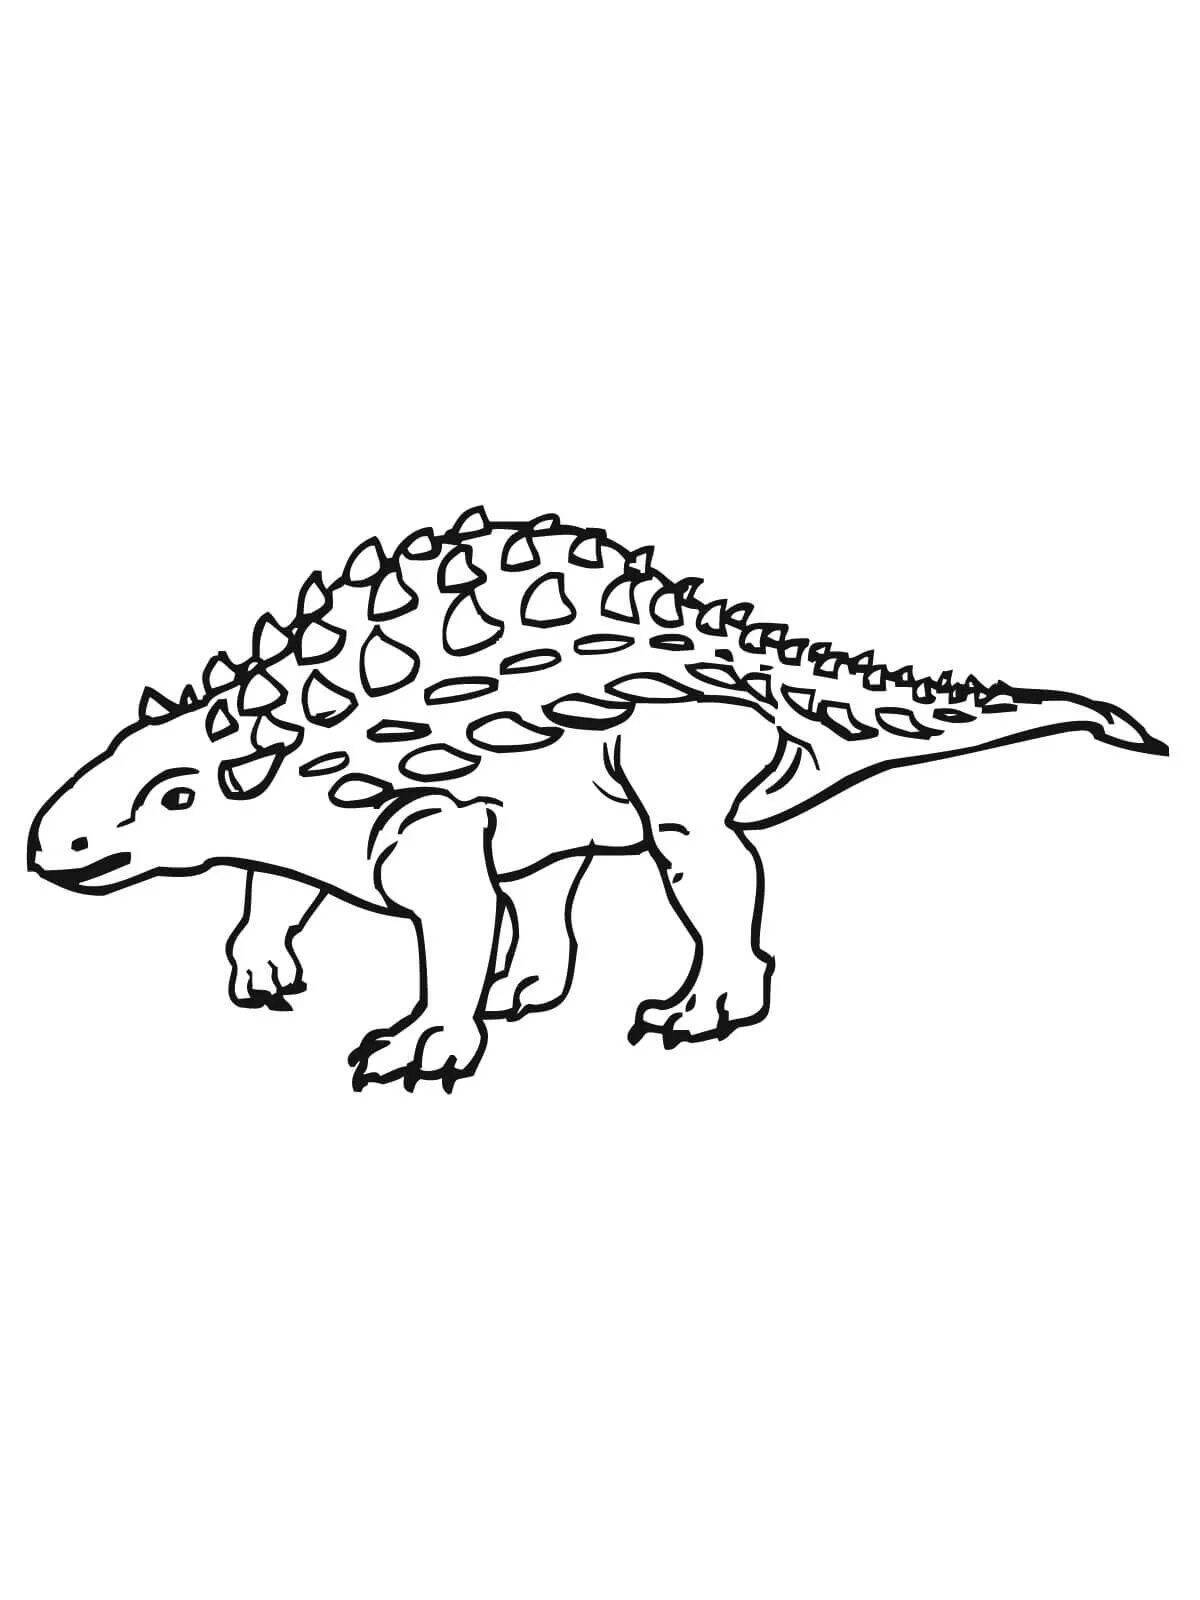 Увлекательная раскраска анкилозавр